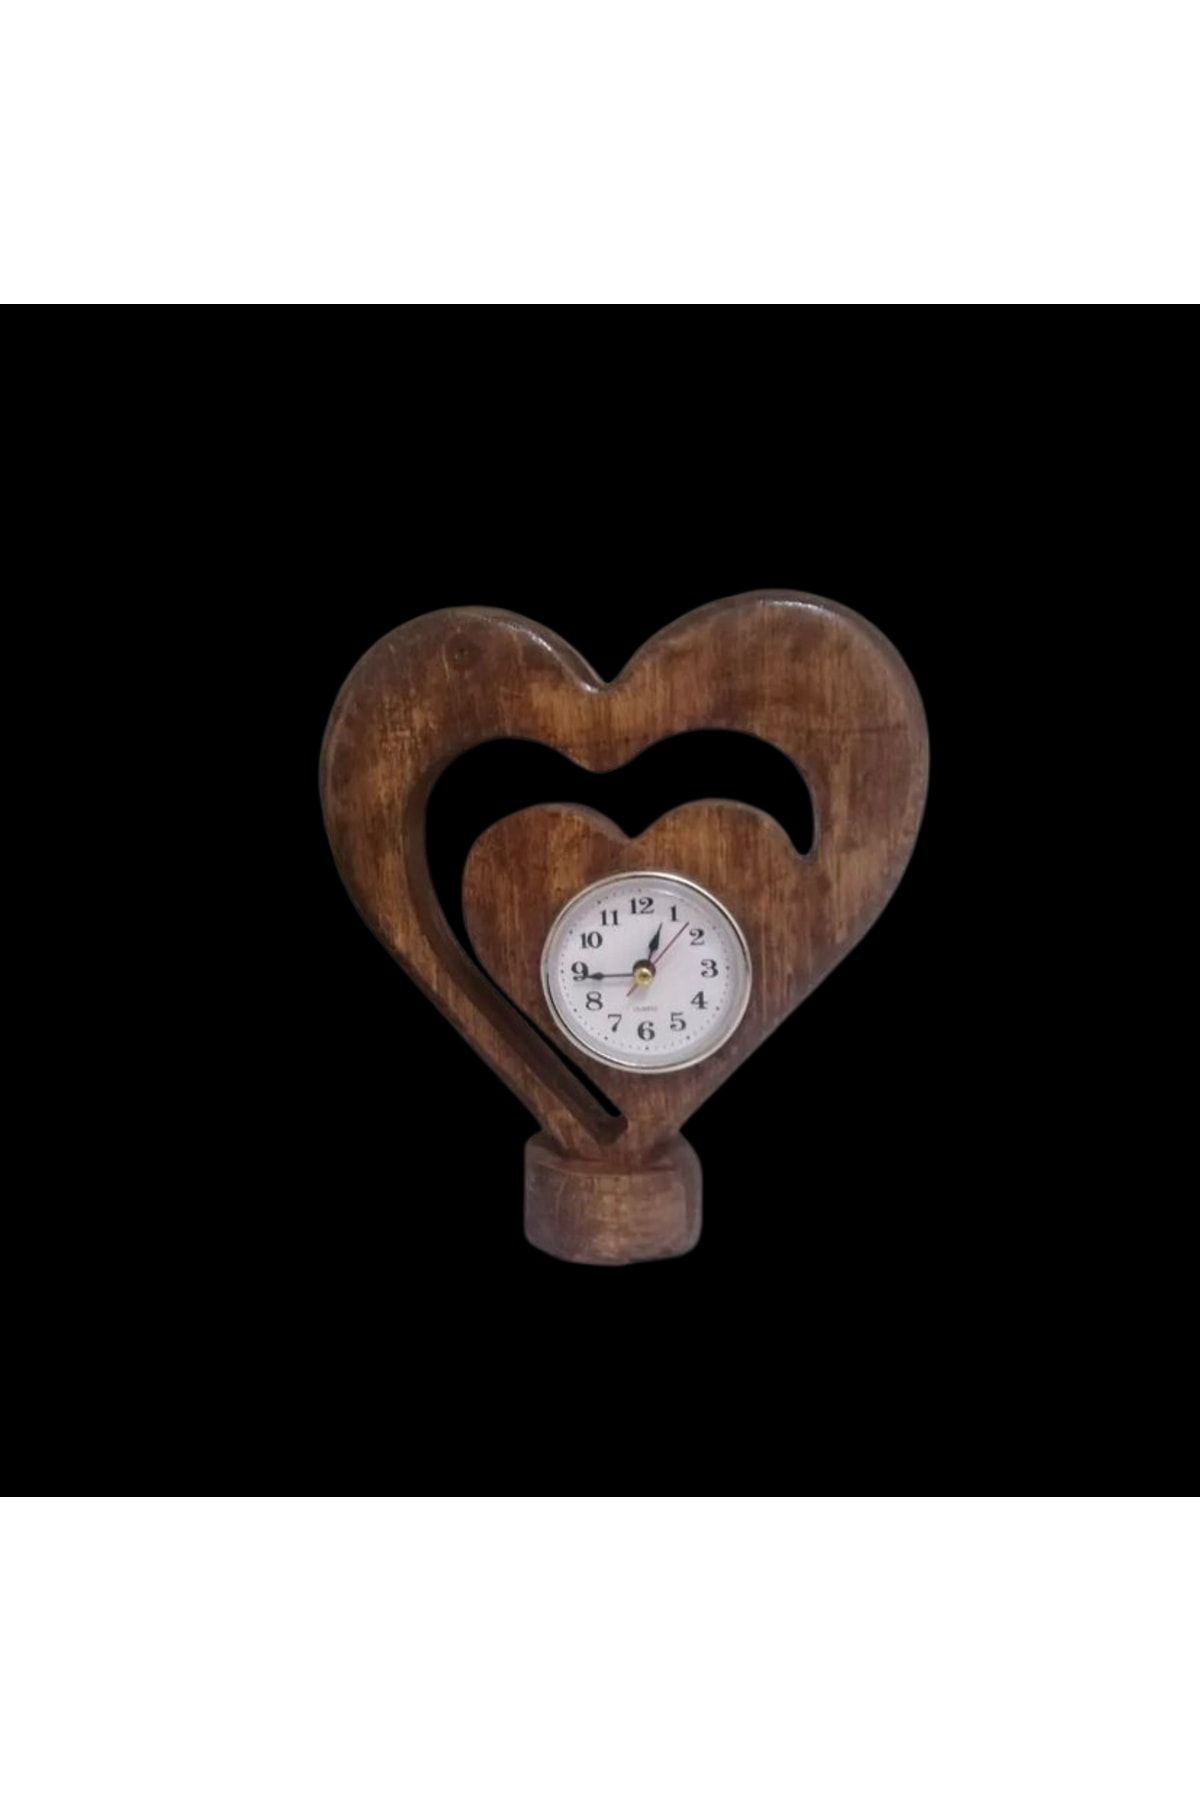 ilker mobilya Masaüstü Saat Özel Tasarım El Yapımı Dekoratif Masa Saati Gürgen Ağacından